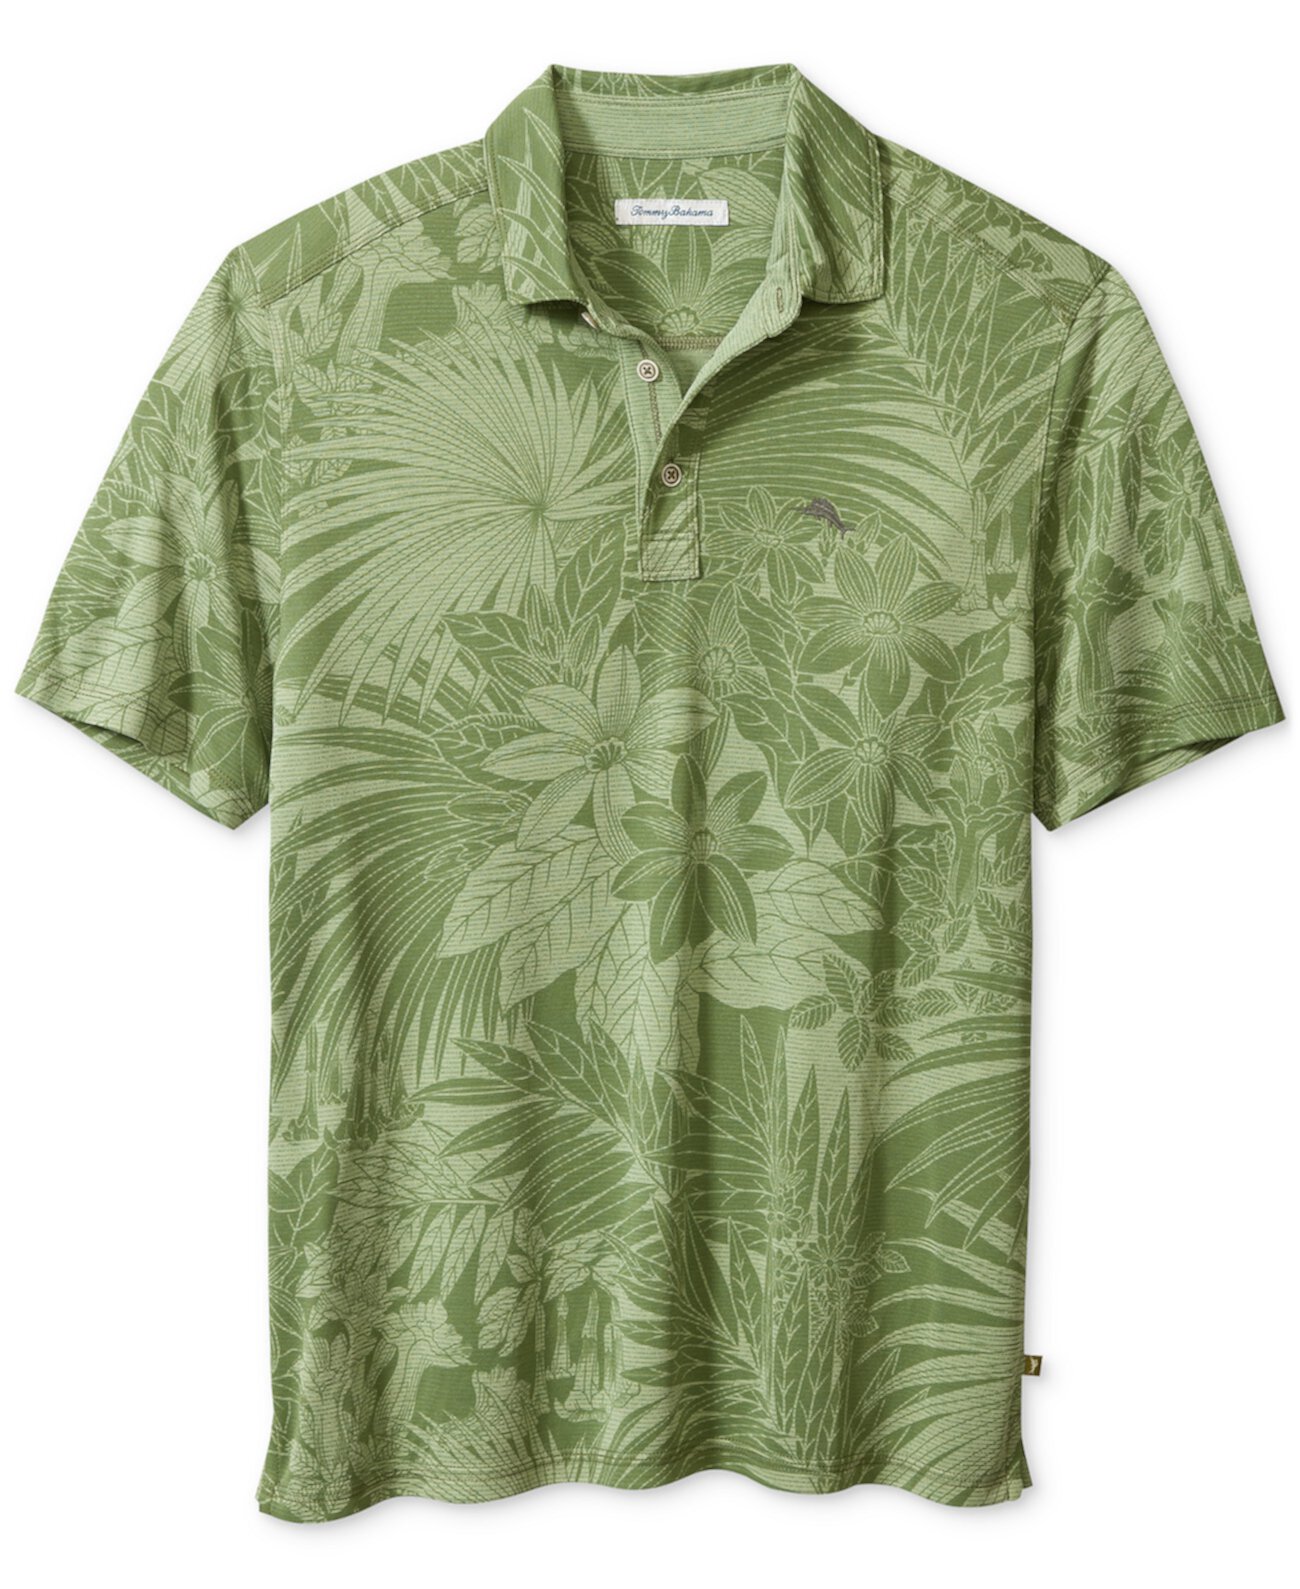 Мужская рубашка-поло с принтом Santiago Paradise Tommy Bahama